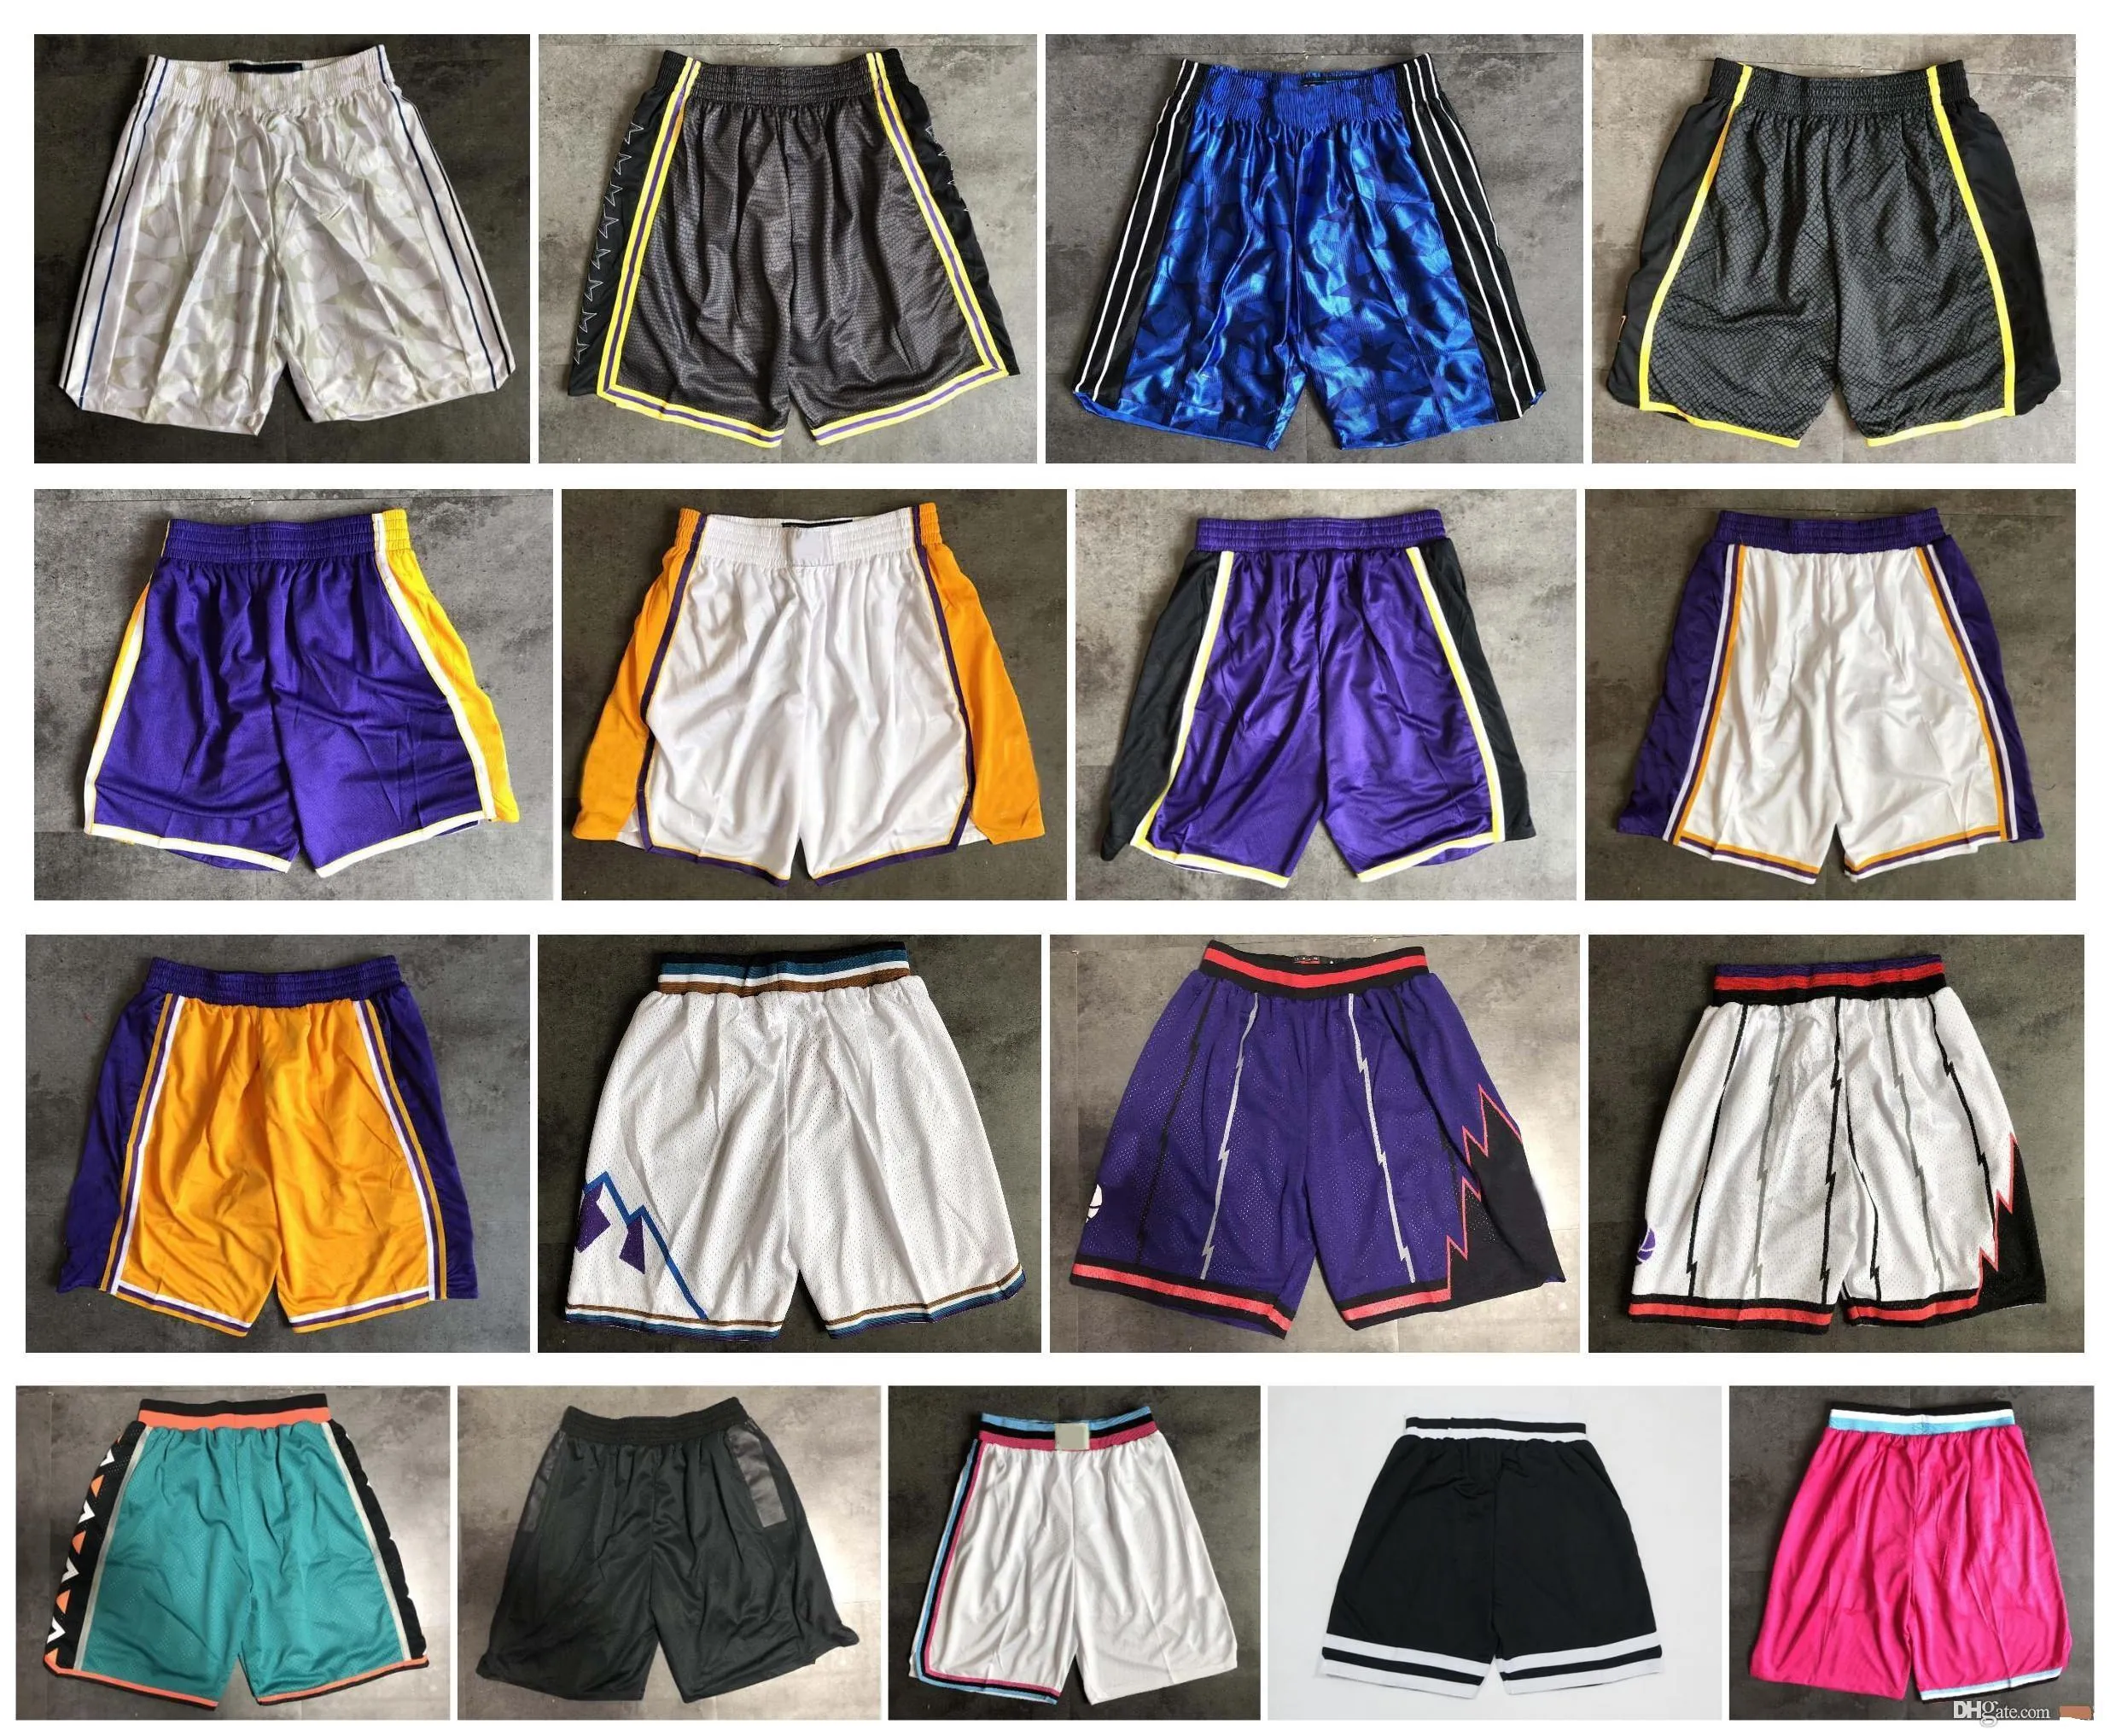 Nueva calidad superior! 2020 Equipo Pantalones cortos de baloncesto hombres pantalones cortos deportes pantalones cortos universitarios blanco azul rojo púrpura amarillo negro verde